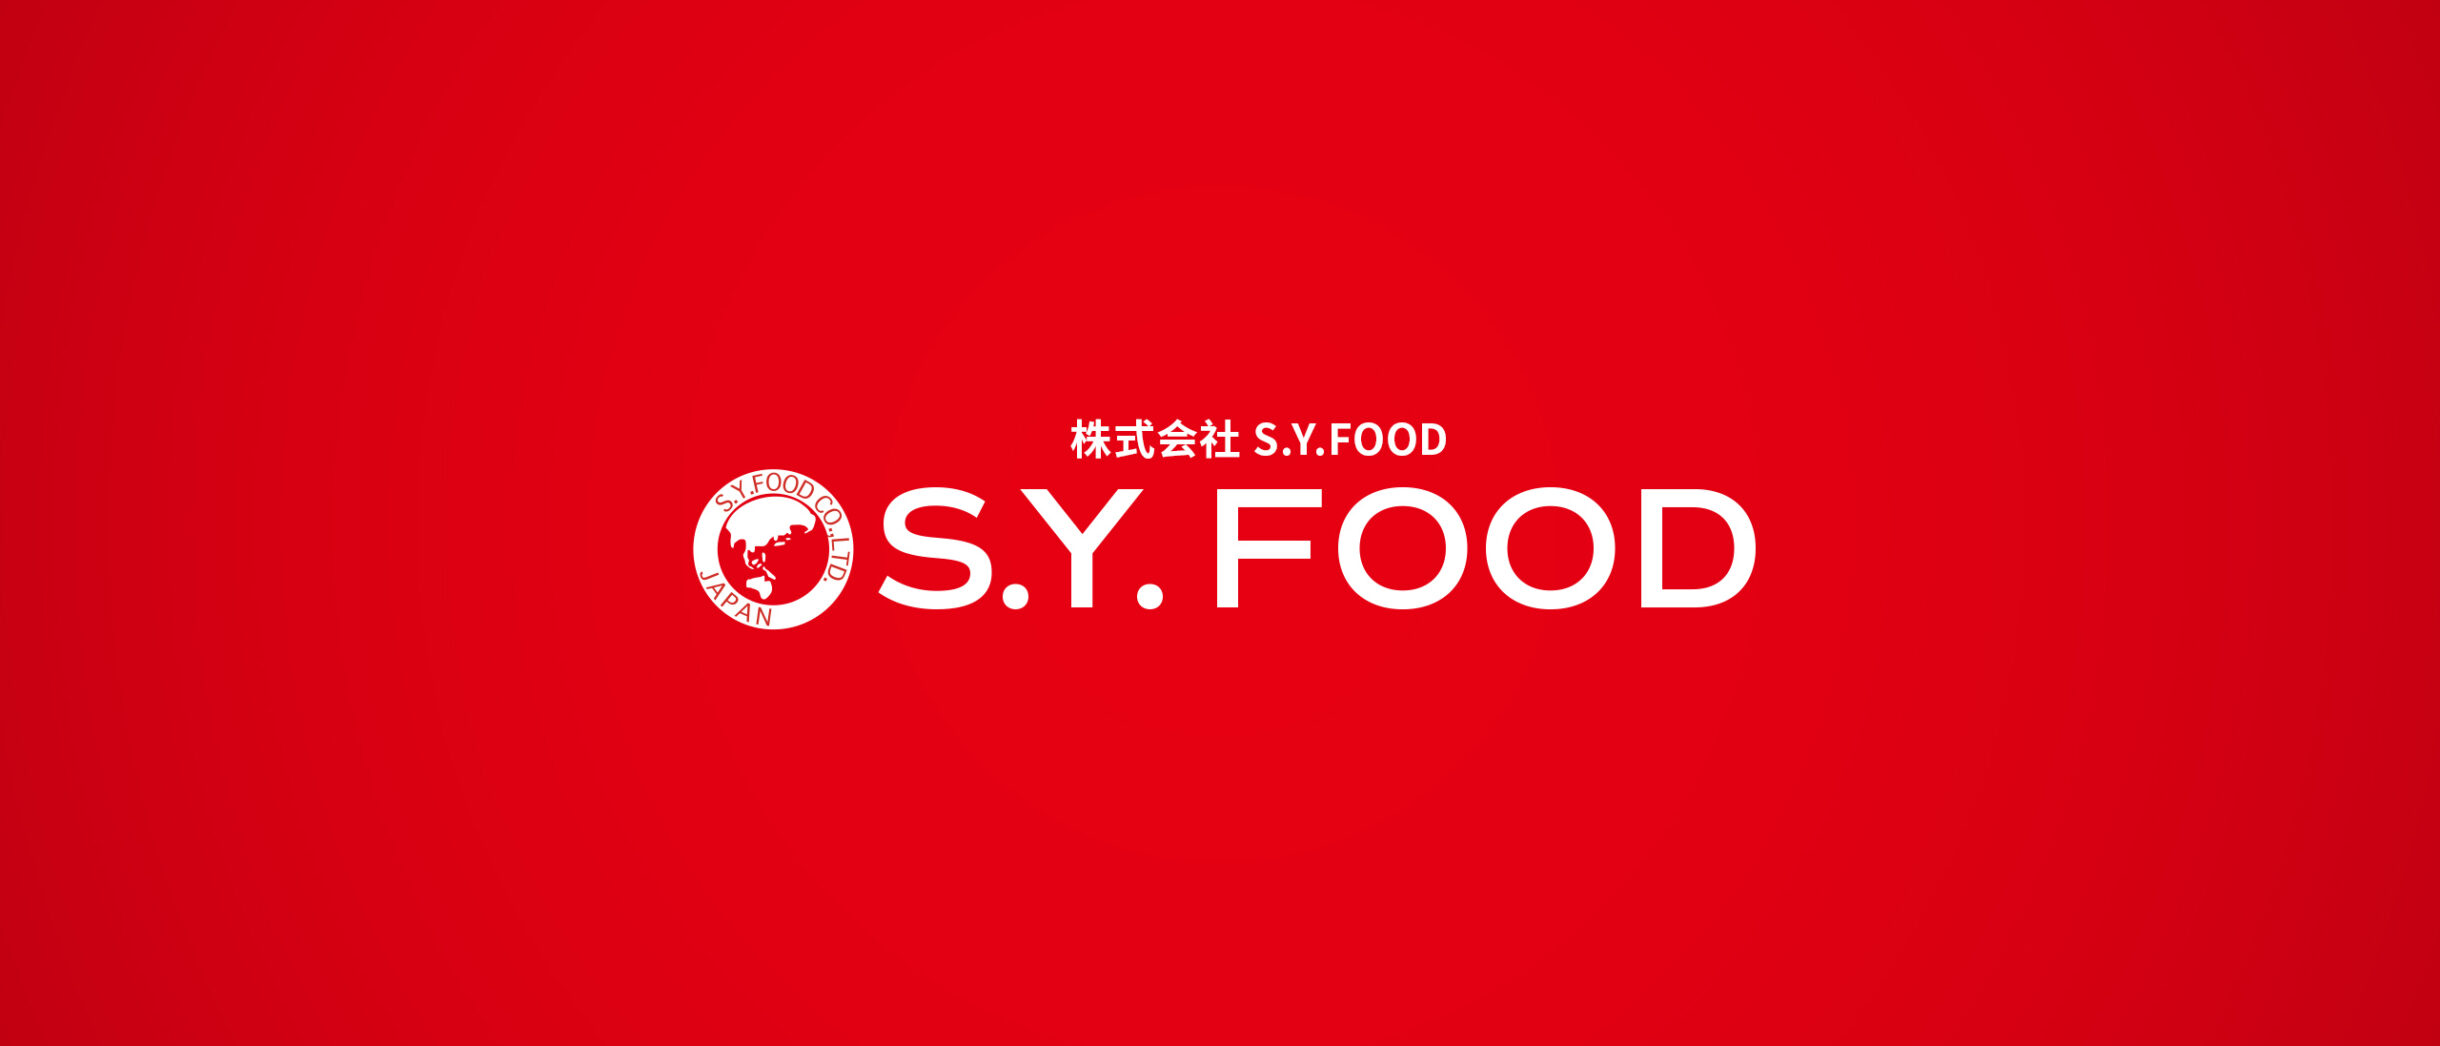 株式会社S.Y.FOOD